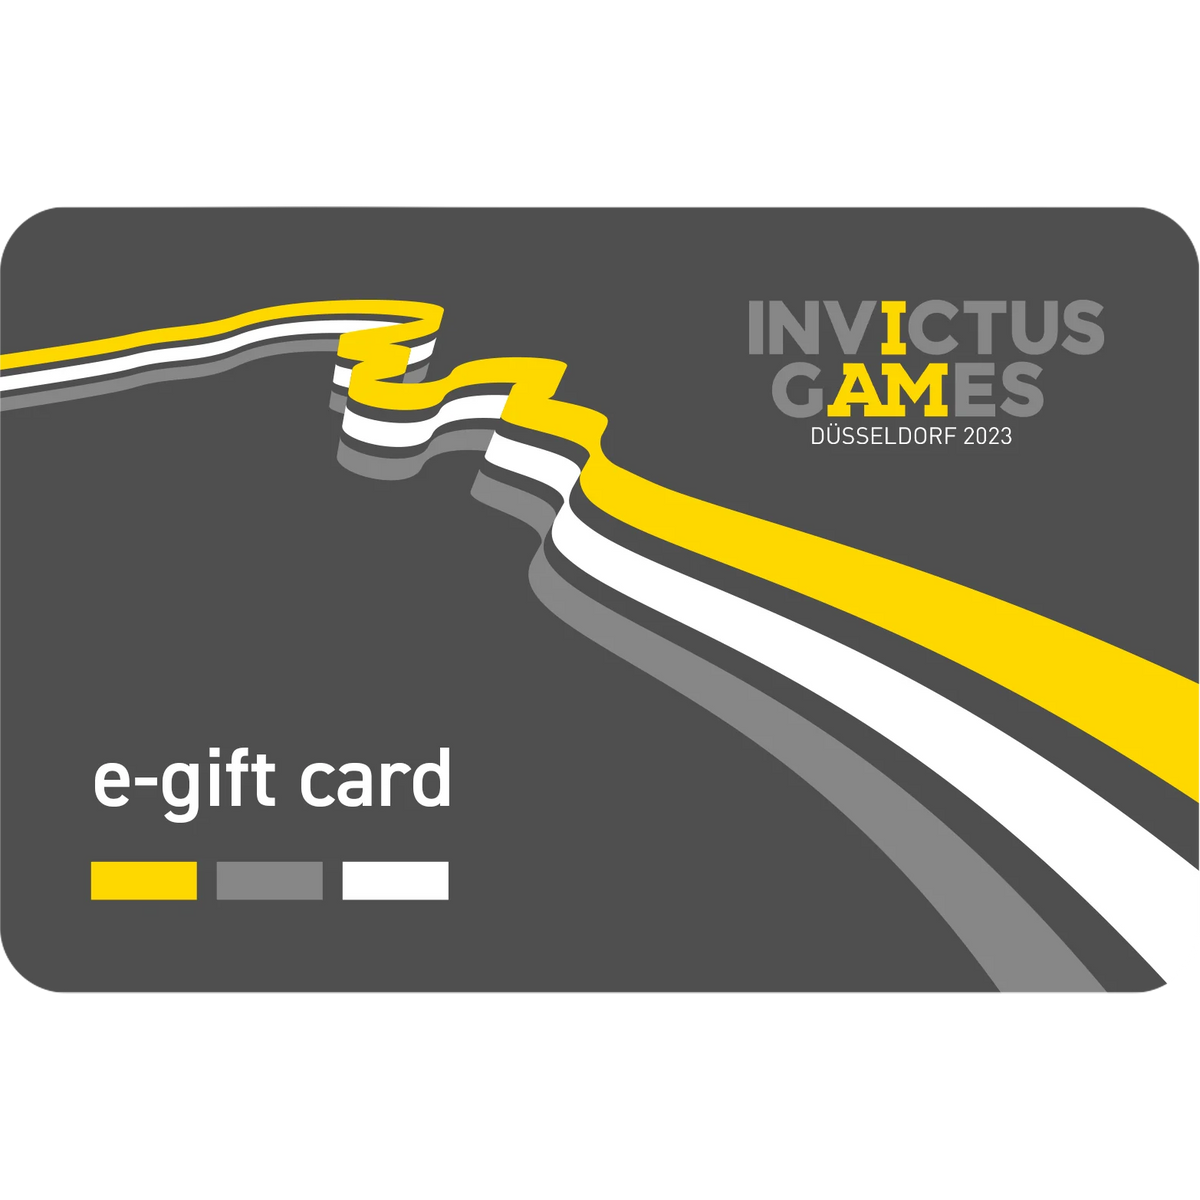 The Invictus Games e-Gift Card